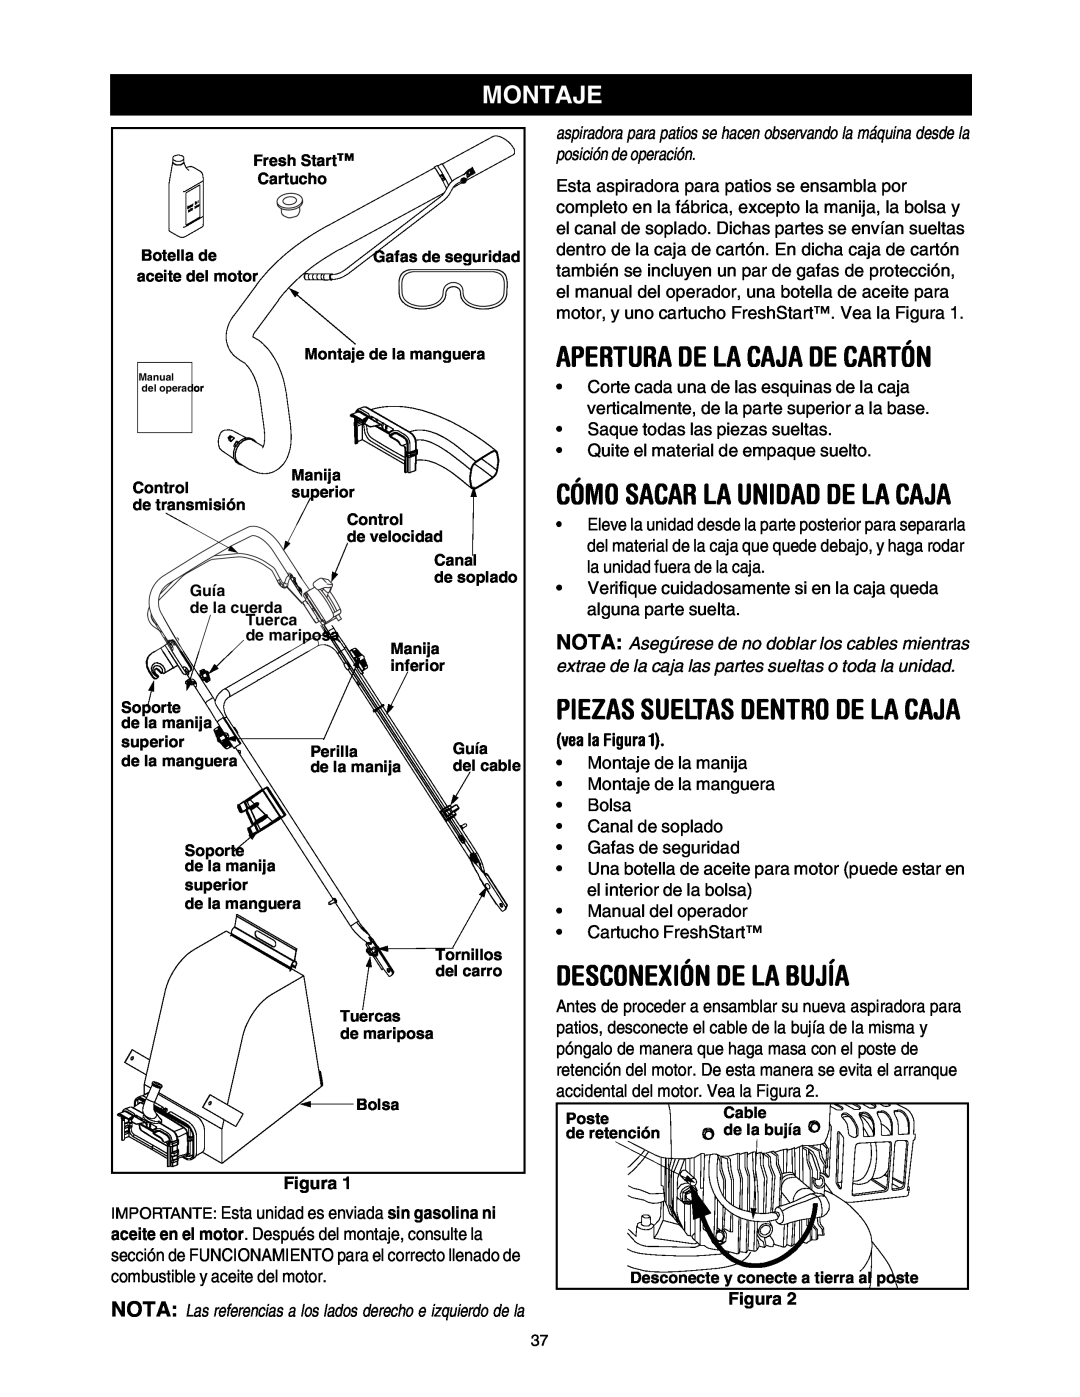 Craftsman 247.77099 Apertura De La Caja De Cartón, Cómo Sacar La Unidad De La Caja, Desconexión De La Bujía, Montaje 